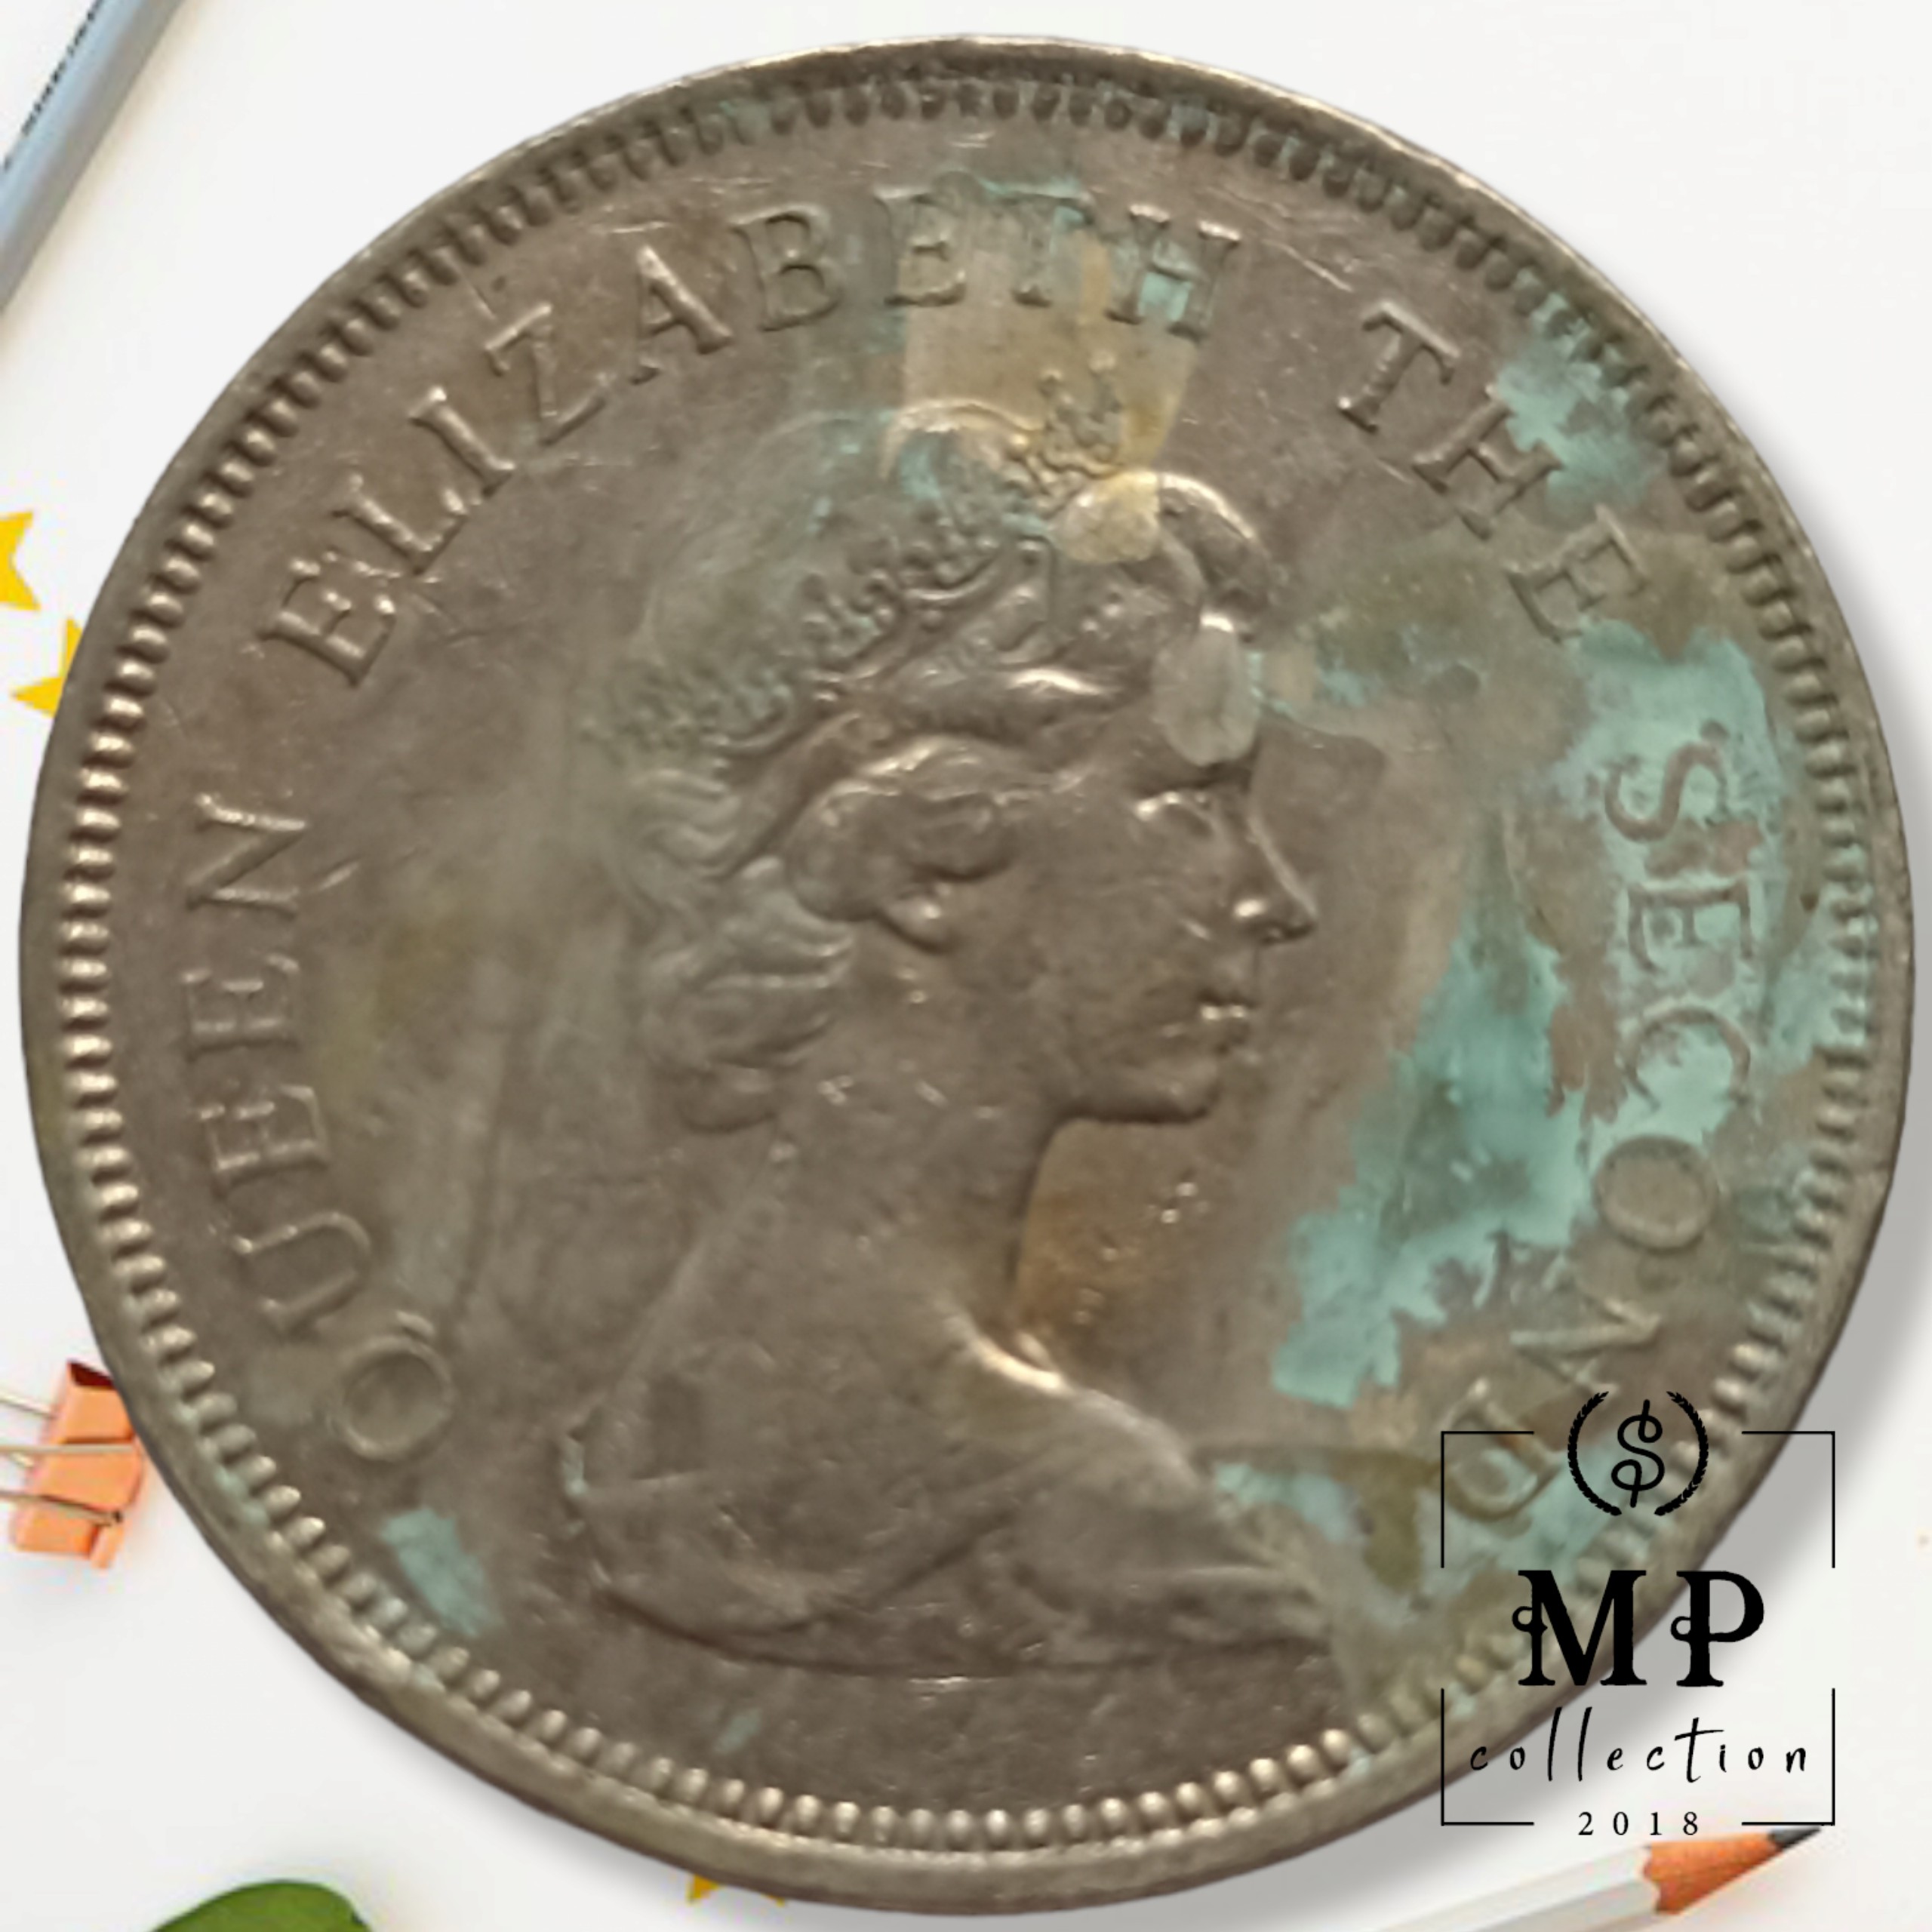 Đồng xu Hong Kong 1 Dollar hình ảnh Nữ hoàng Elizabeth II 1960-1970